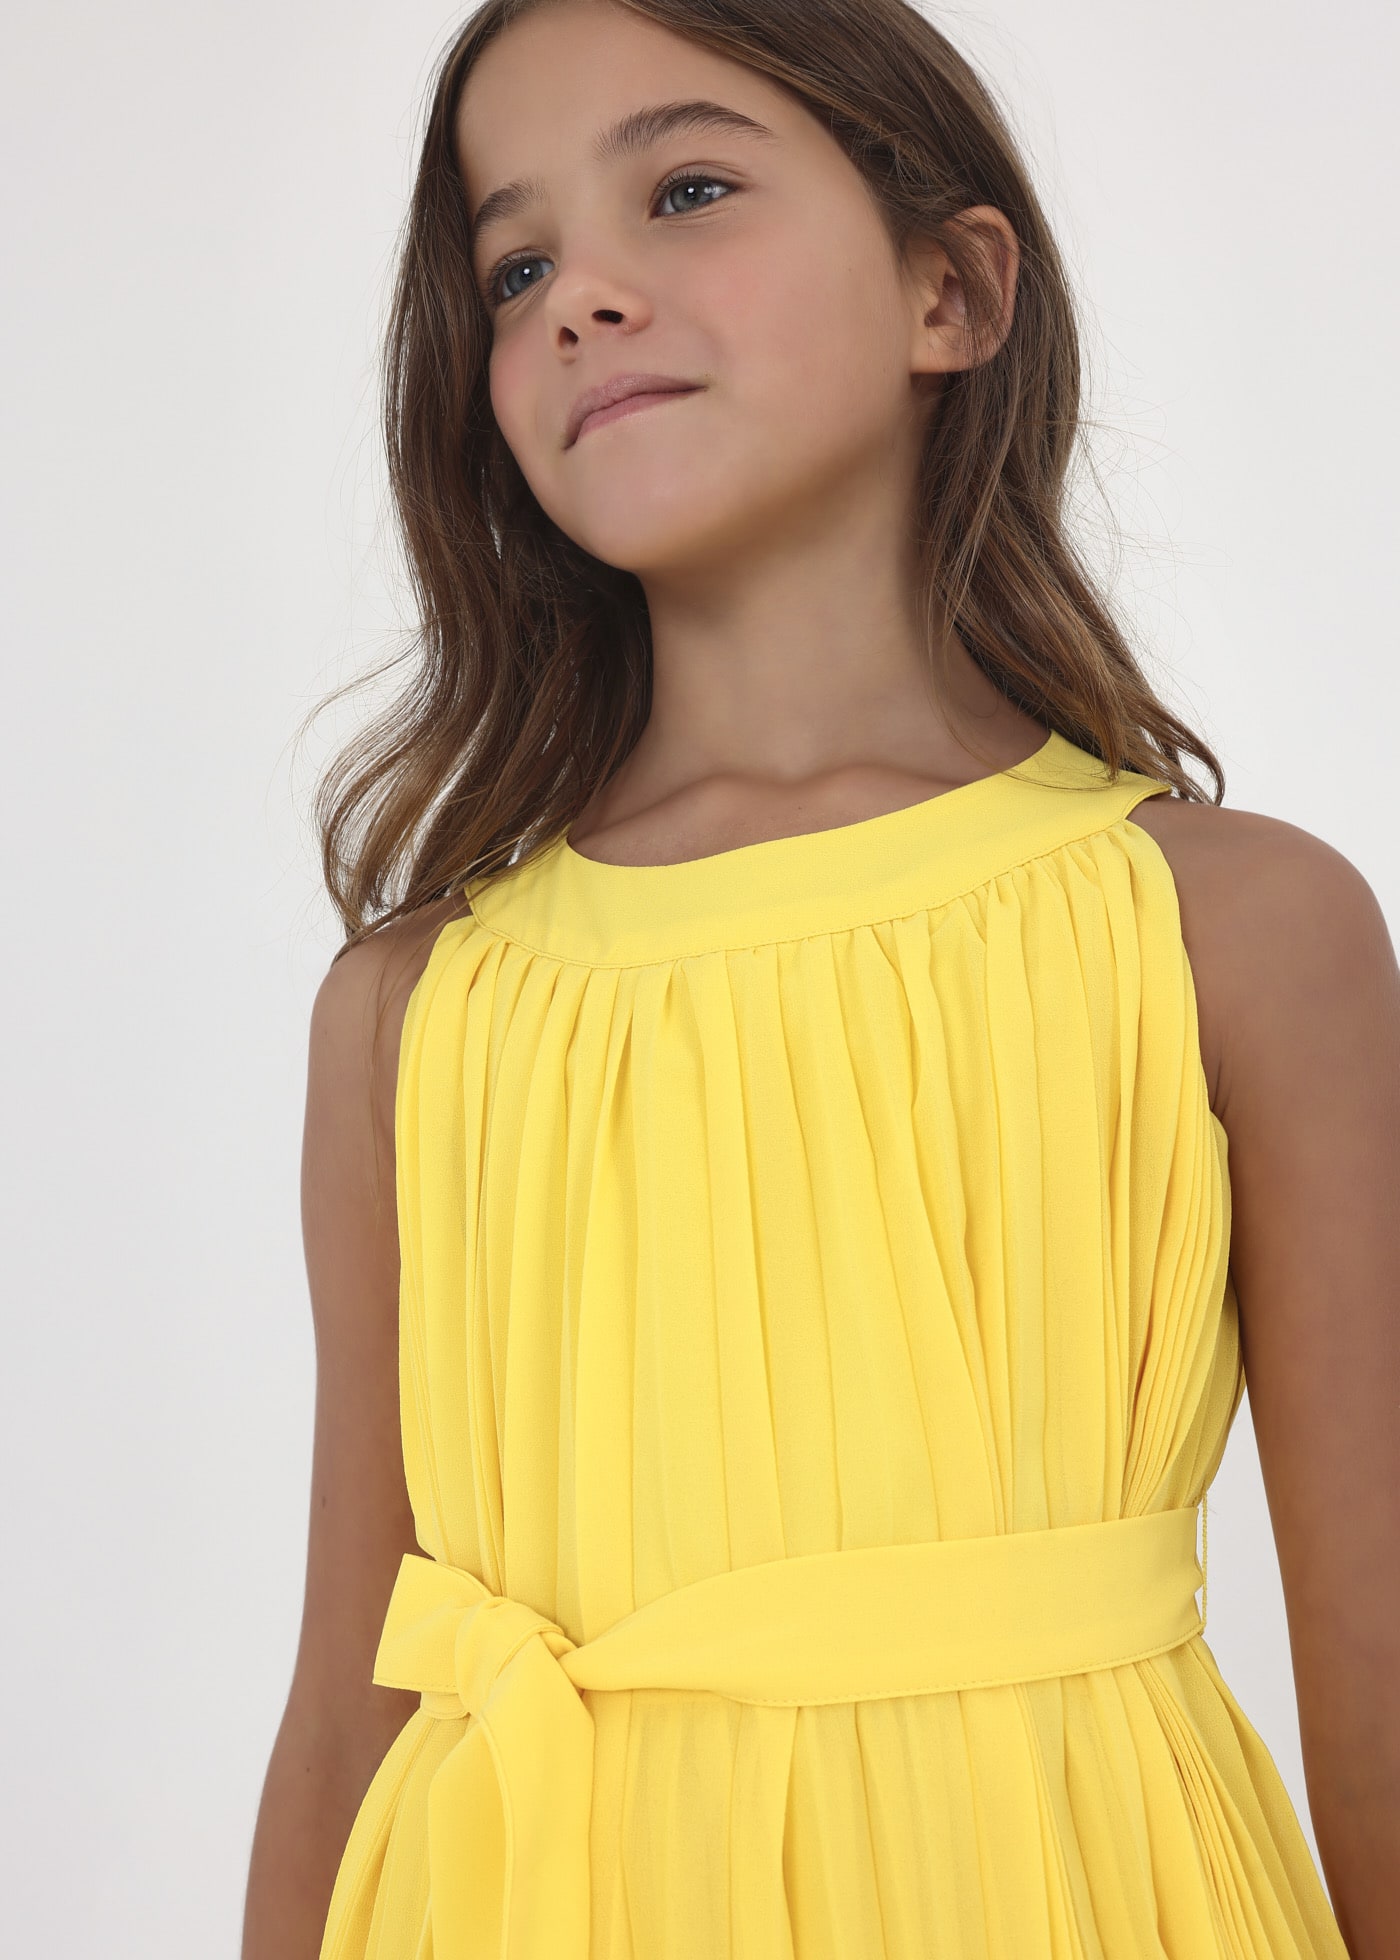 Sukienka plisowana z paskiem w formie kokardy dla dziewczynki Mimosa |  Mayoral ®